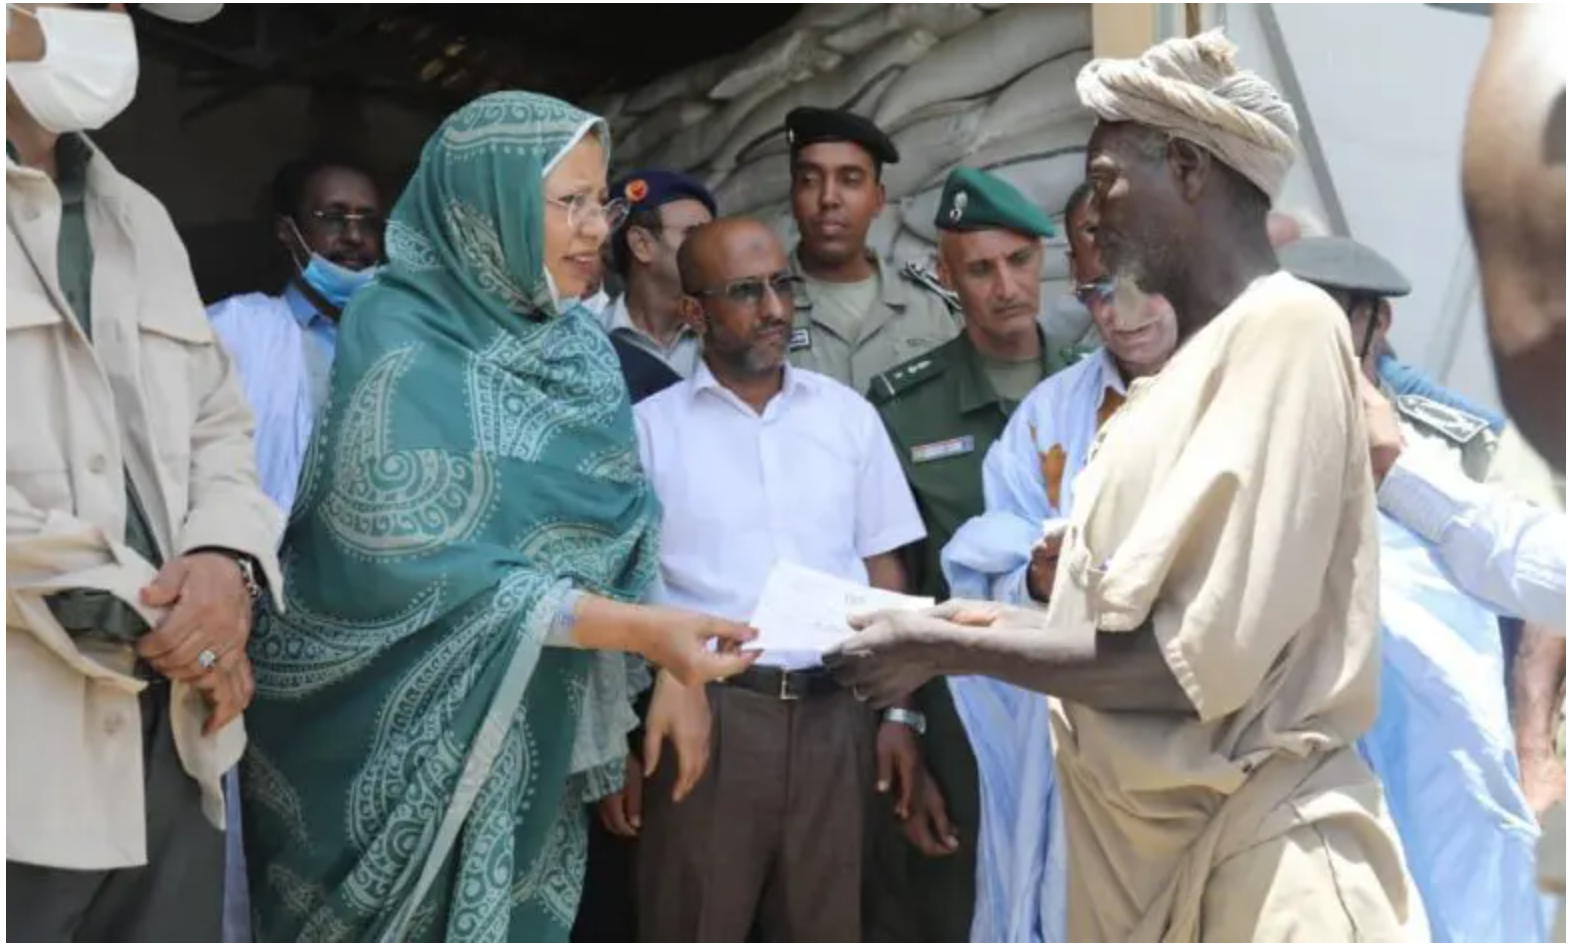 Mauritanie : lancement d’une campagne de distributions d’aides alimentaires à 215.000 familles